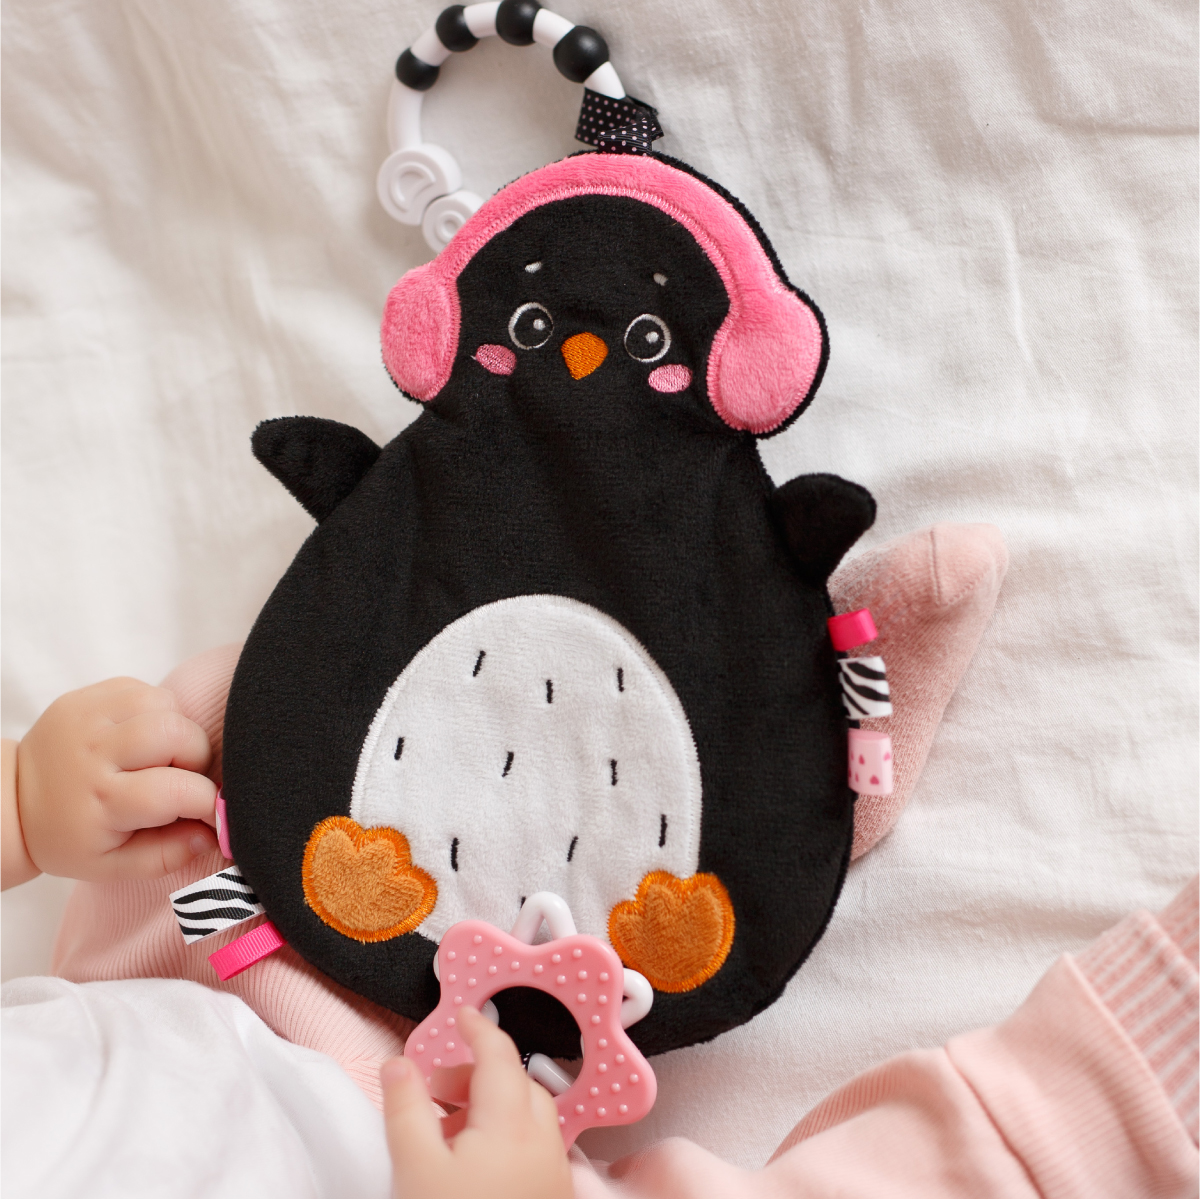 Myakishi Toy (Poon Penguin Hanging Toy)